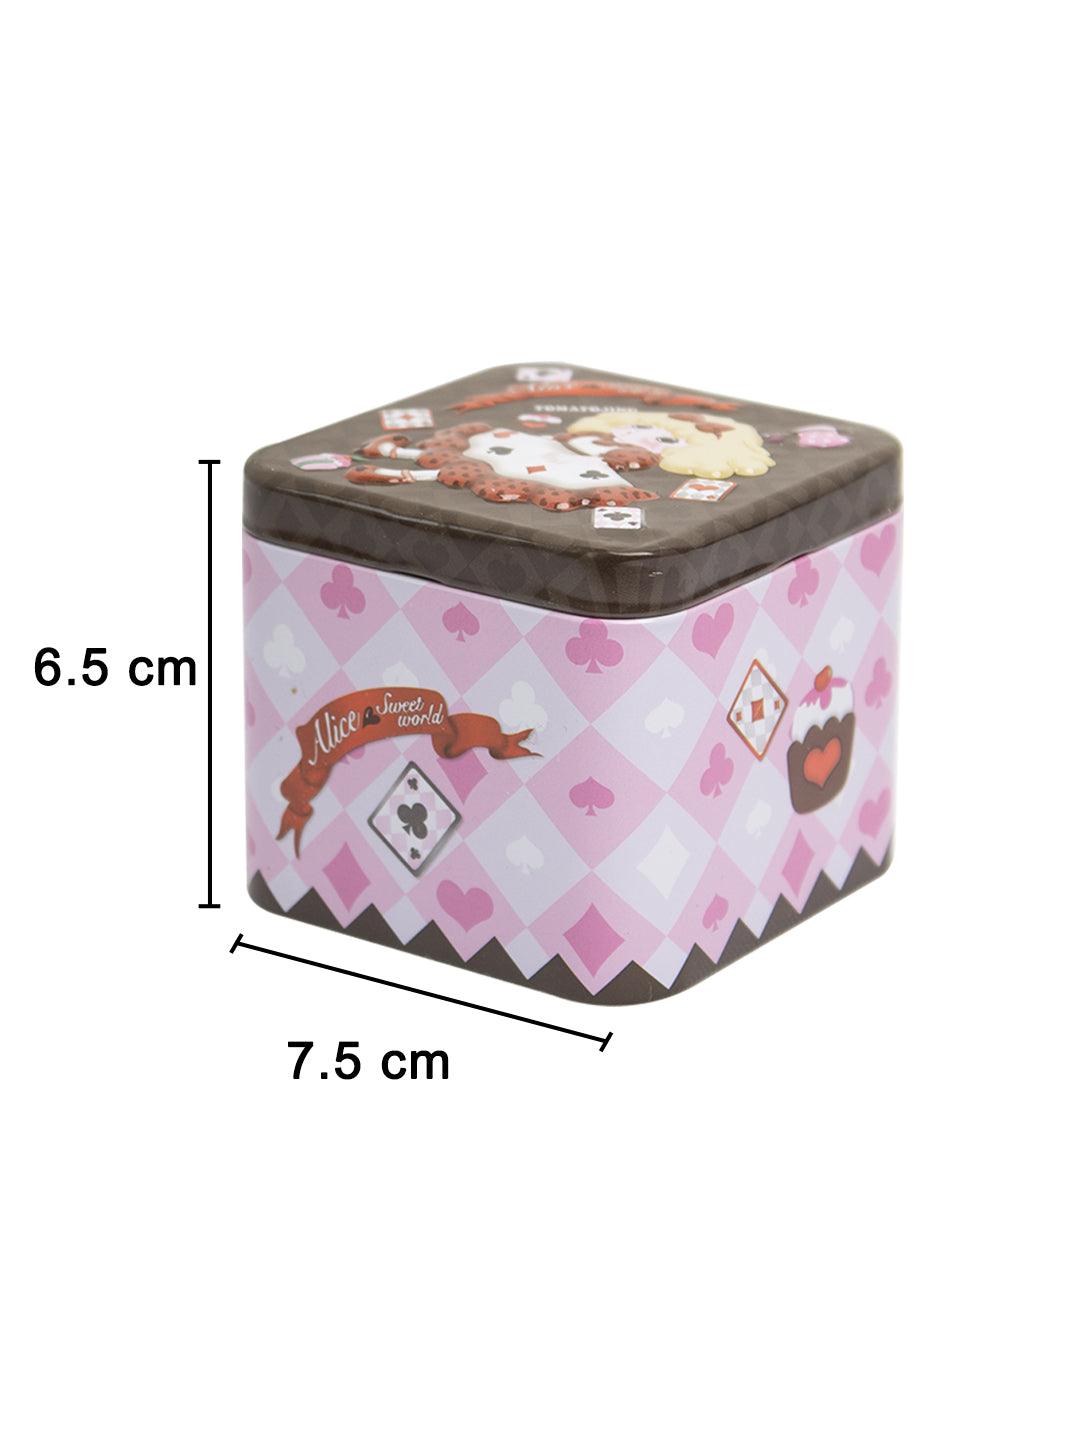 Home Tin Storage Box - MARKET 99